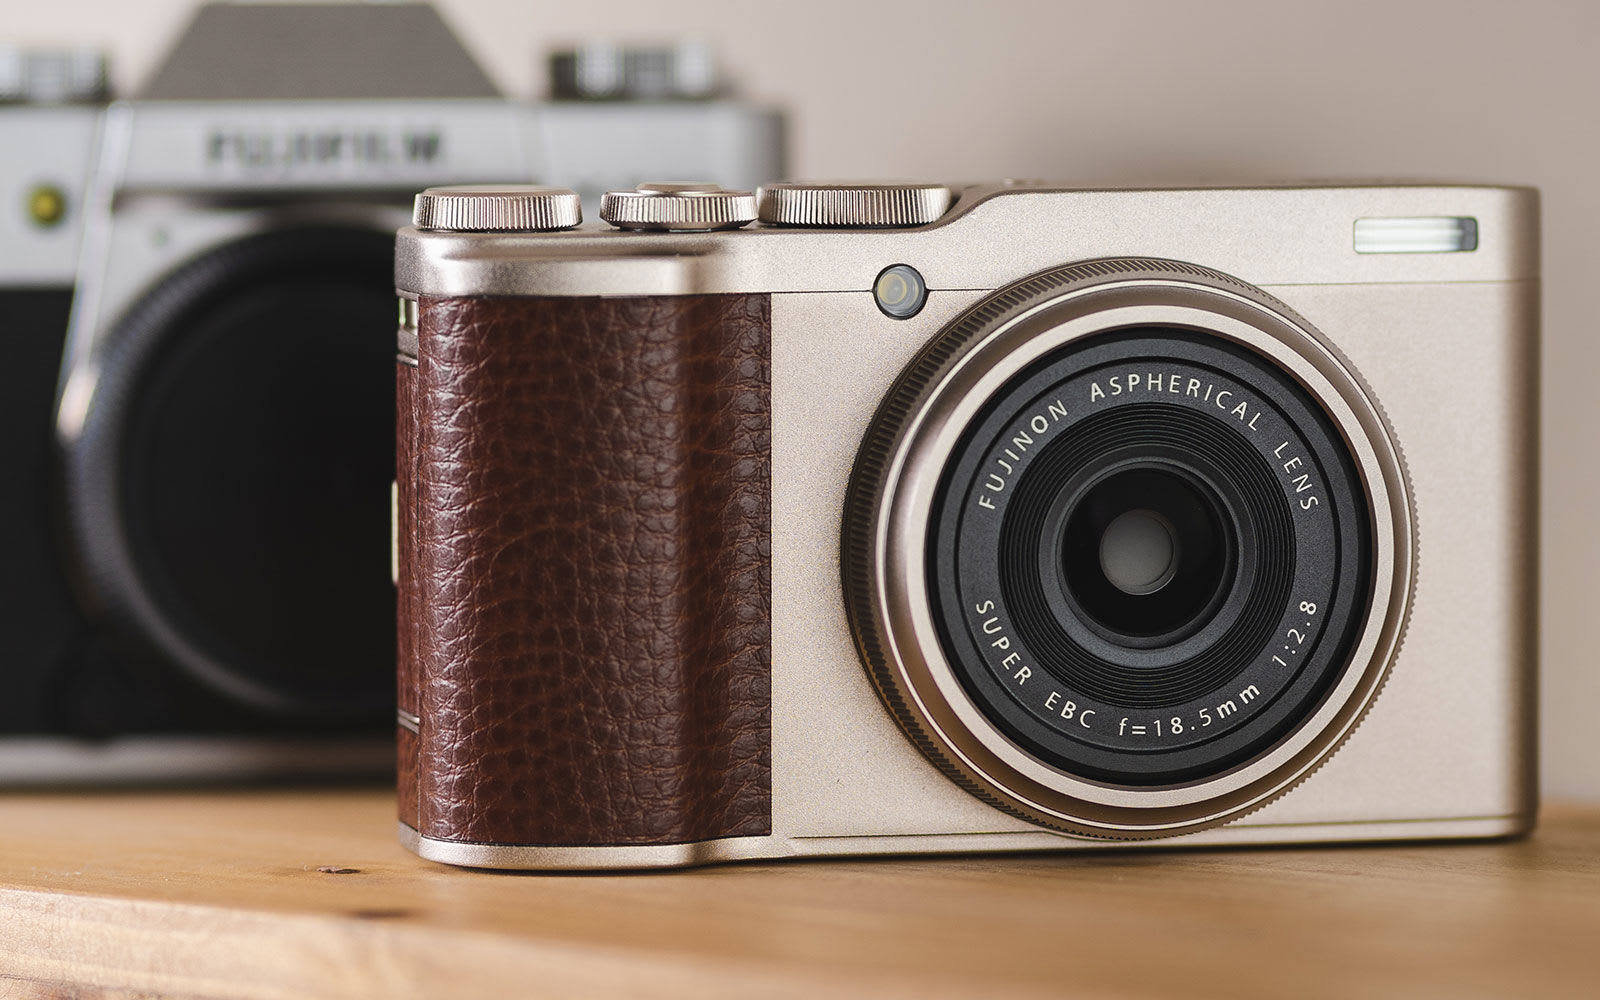 Fujifilm XF10 compact camera